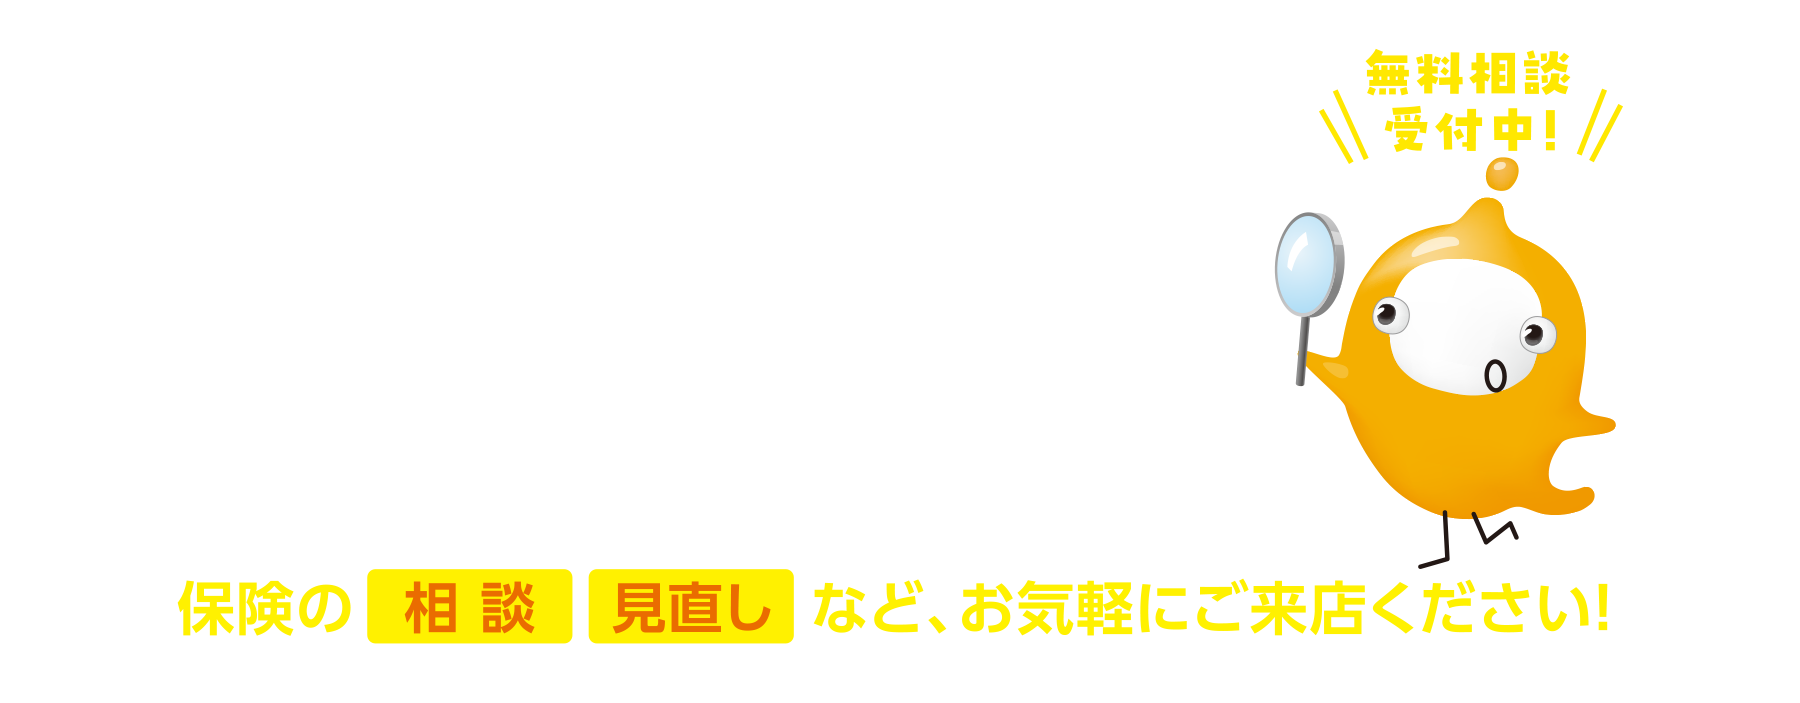 保険クリニックイオンモール熱田店・アピタ名古屋南店